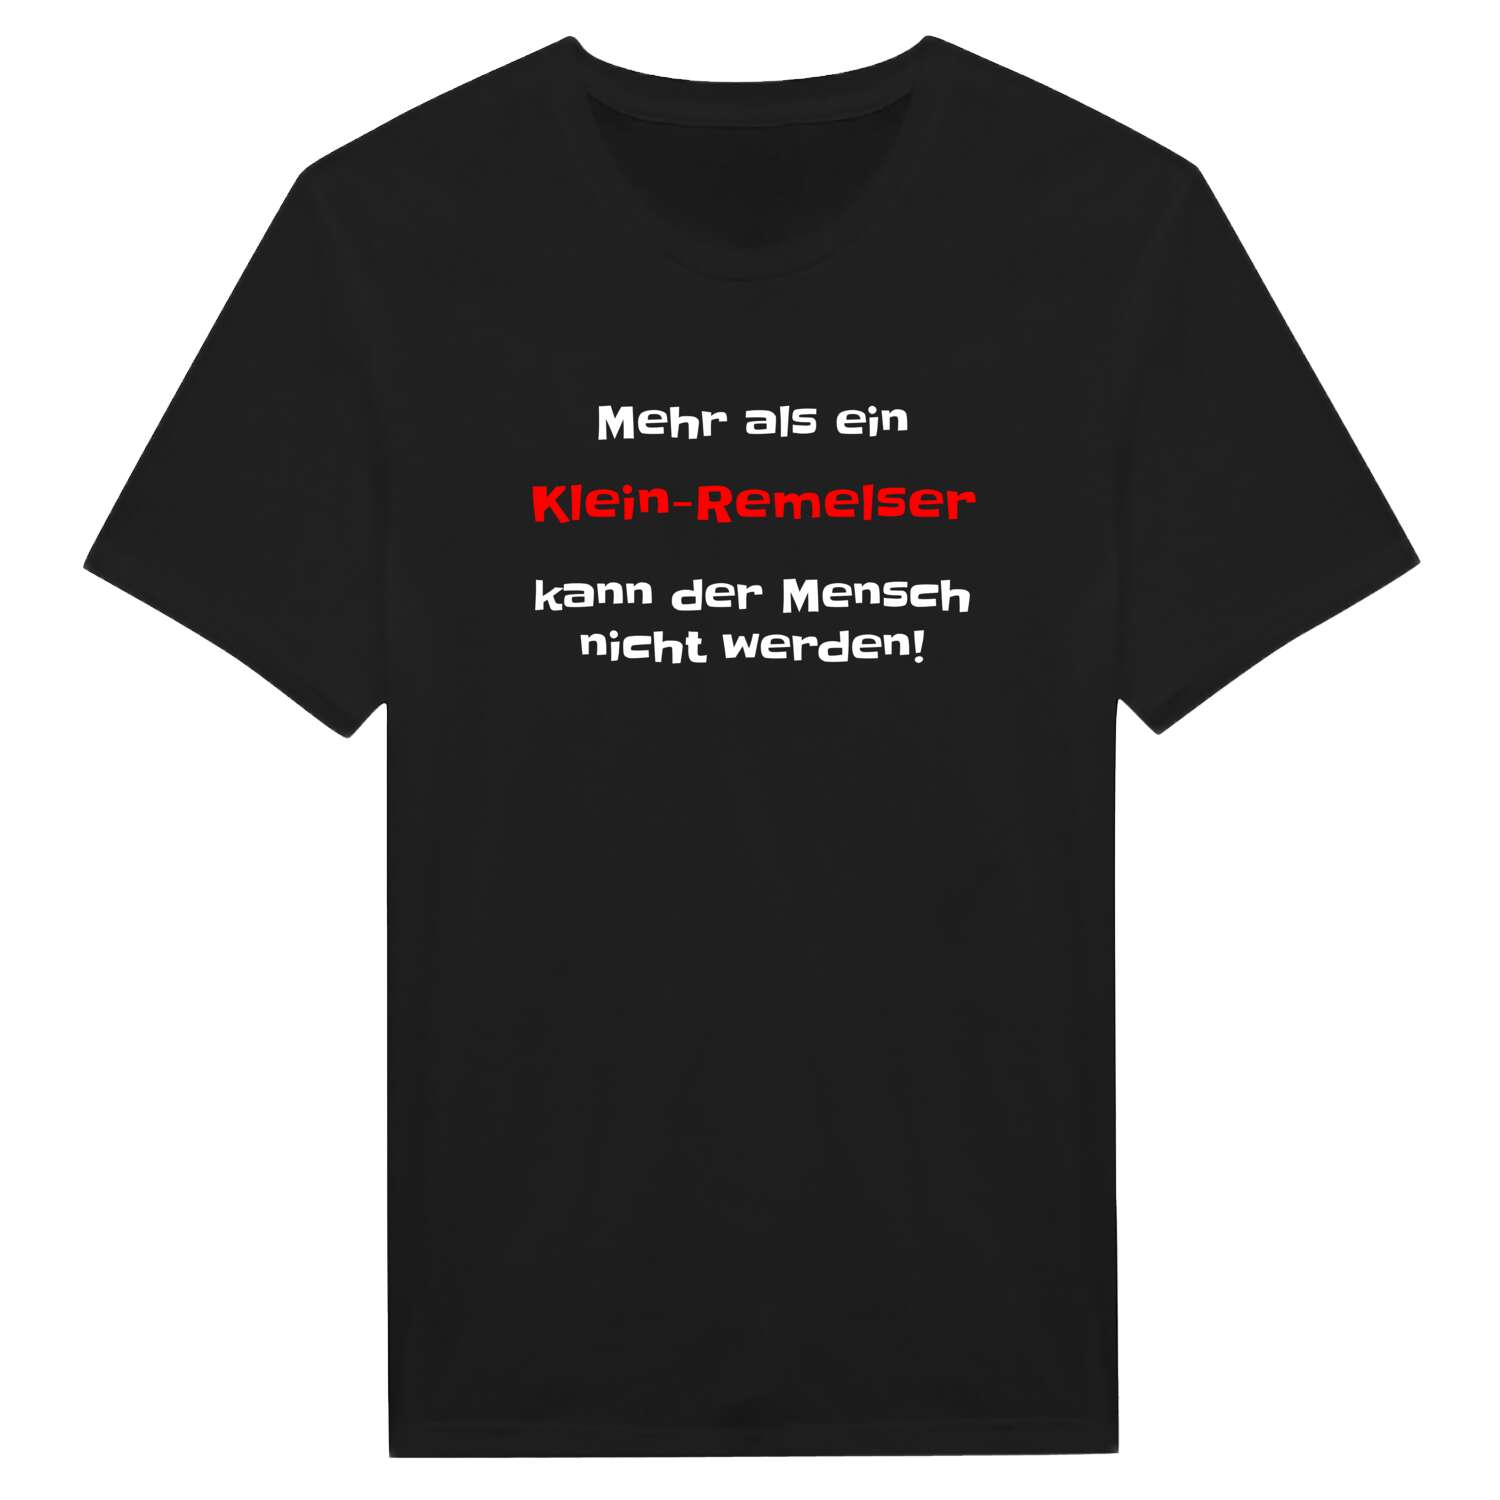 Klein-Remels T-Shirt »Mehr als ein«